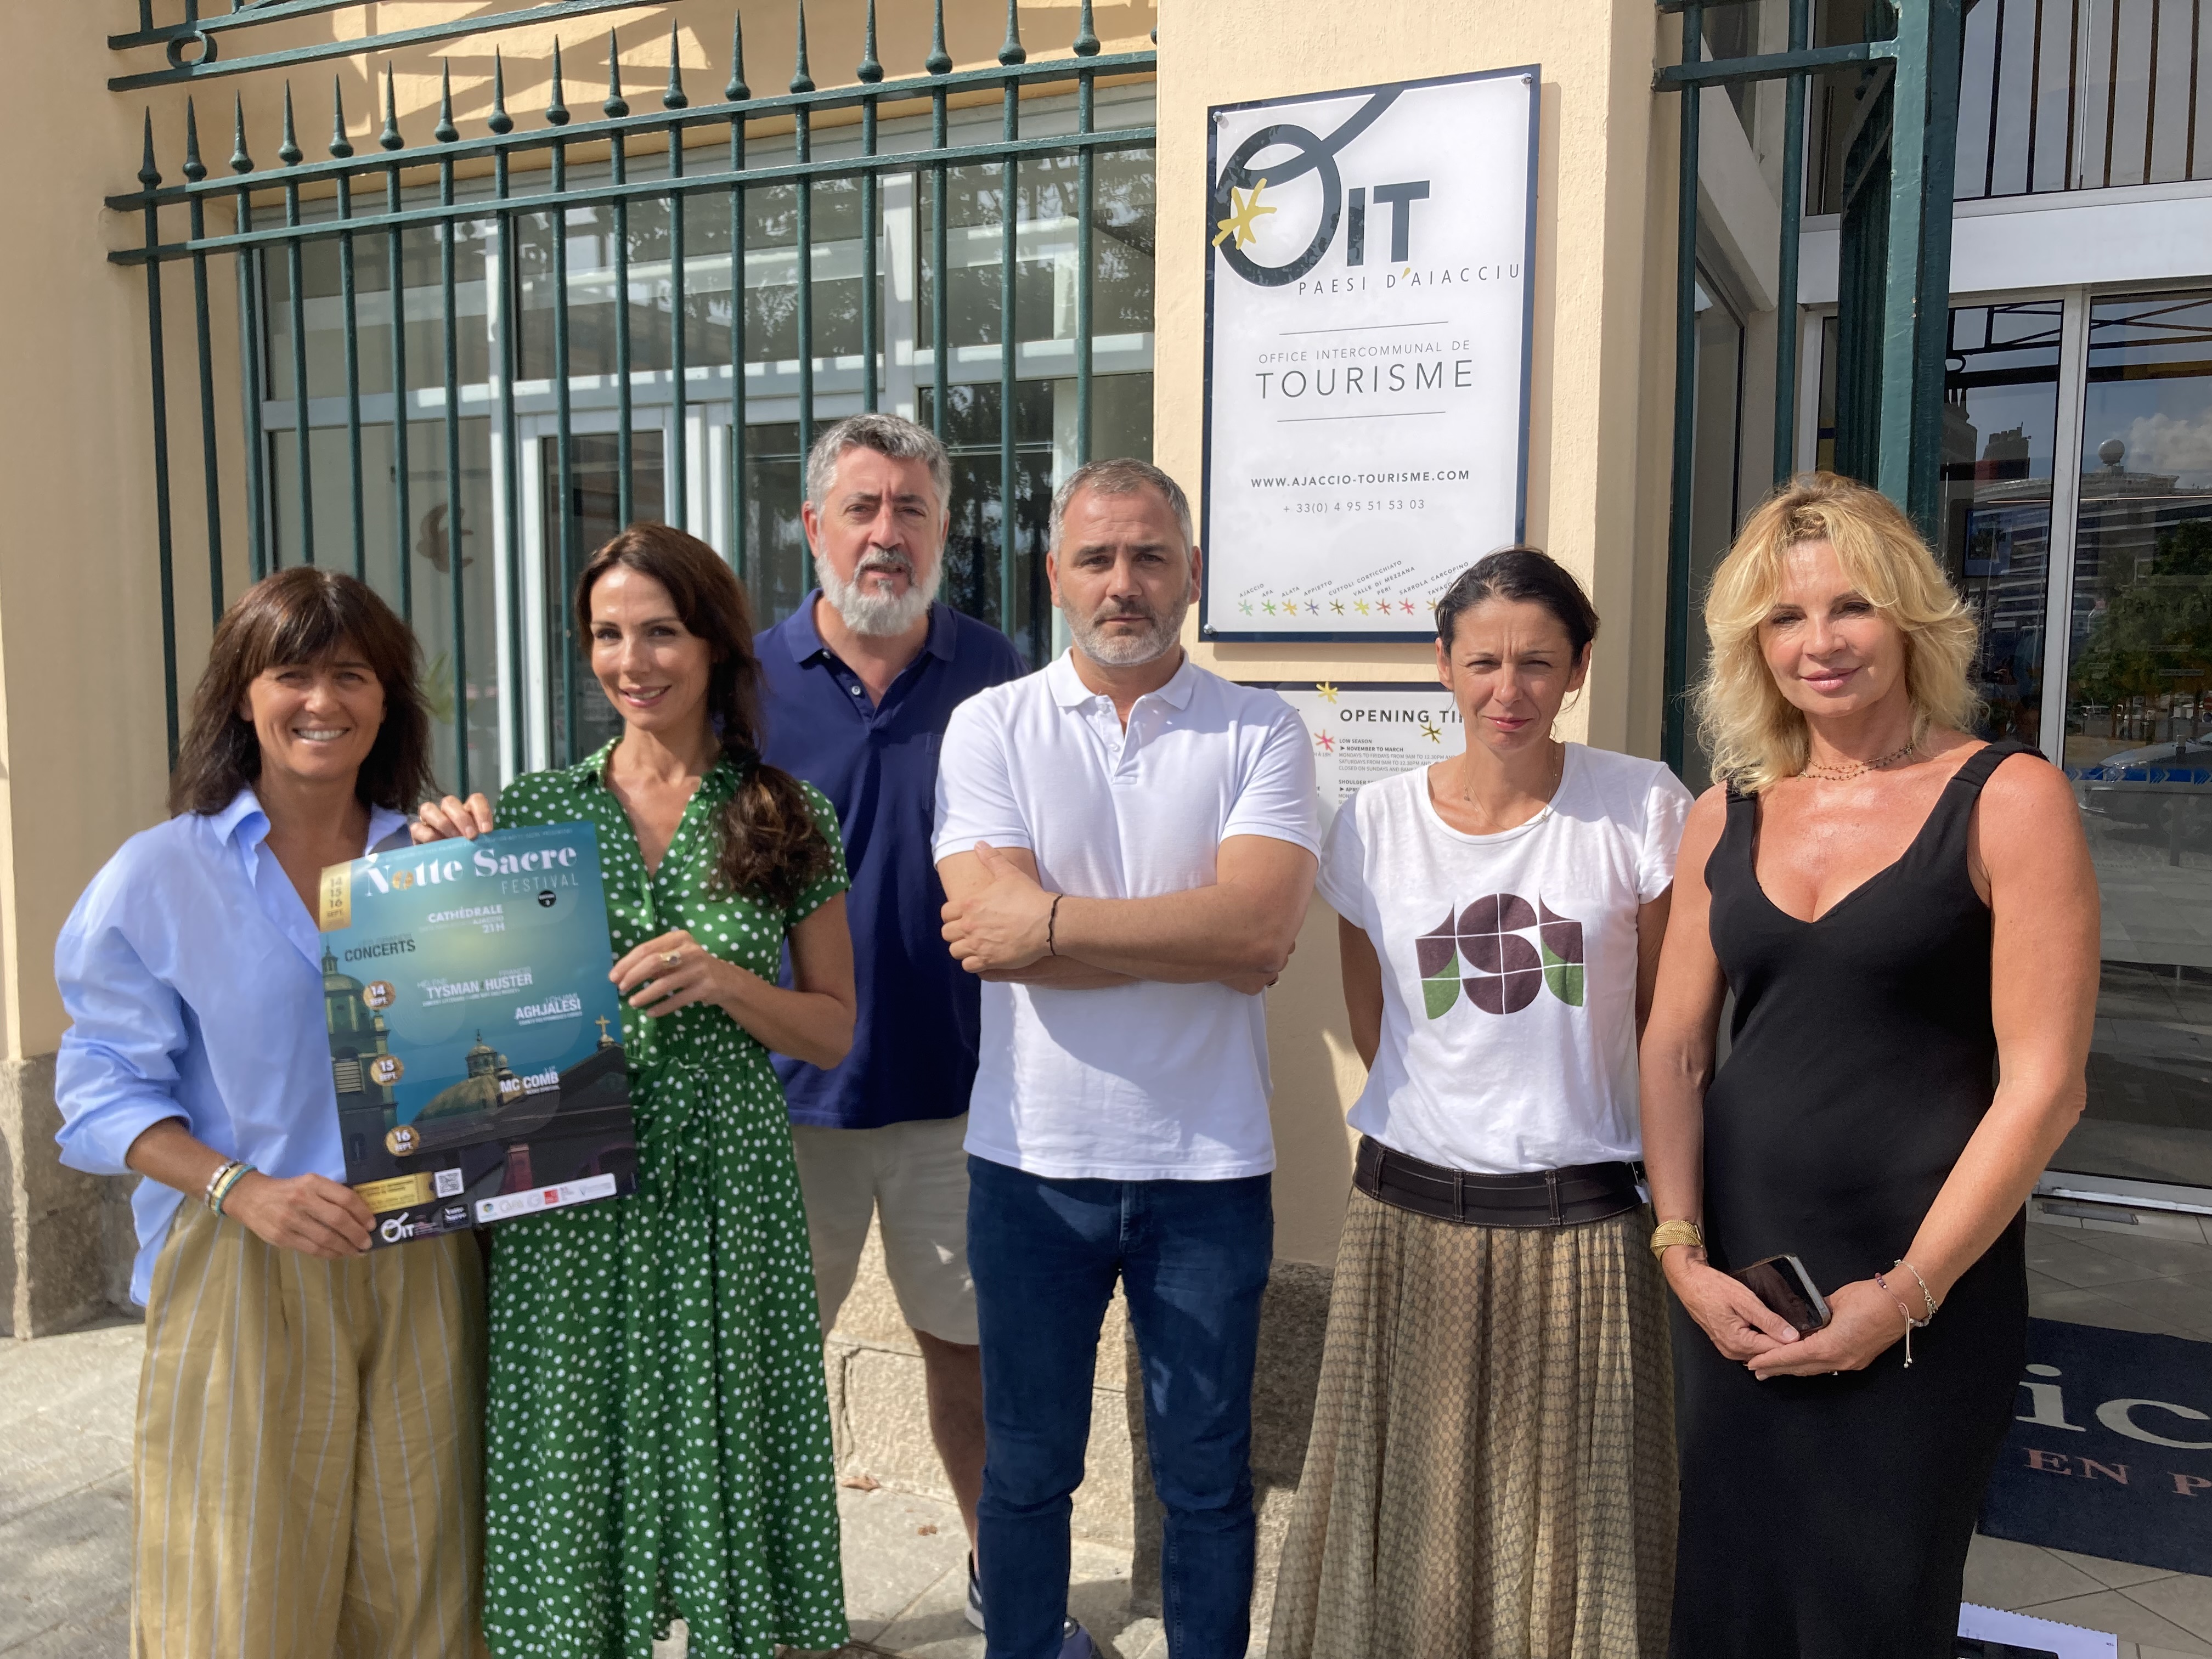 L'équipe organisatrice du festival Notte Sacre, devant l'office du tourisme, à Ajaccio. Photo : Julia Sereni